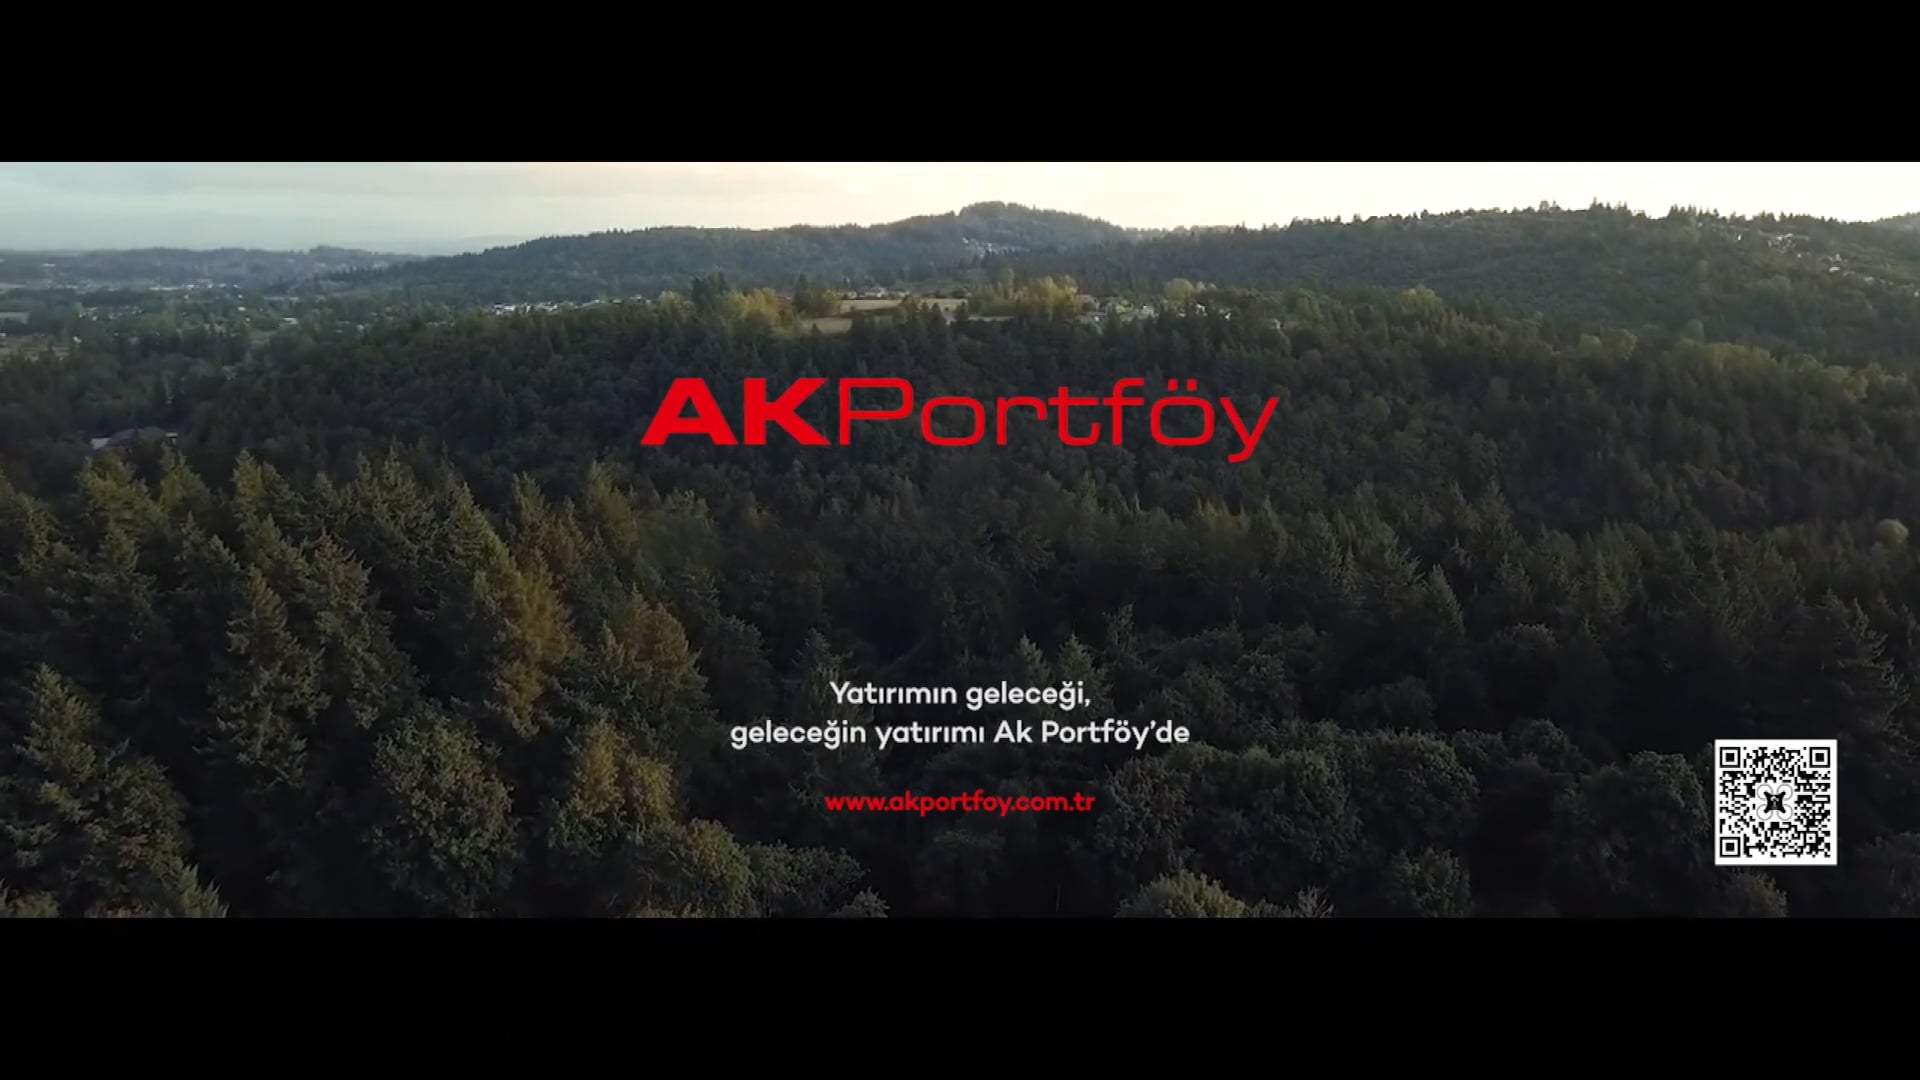 AK Portföy ve Ecording İş Birliği ile Gerçekleştirilen "Geleceğe Bir Tohum At" Projesi Filmi